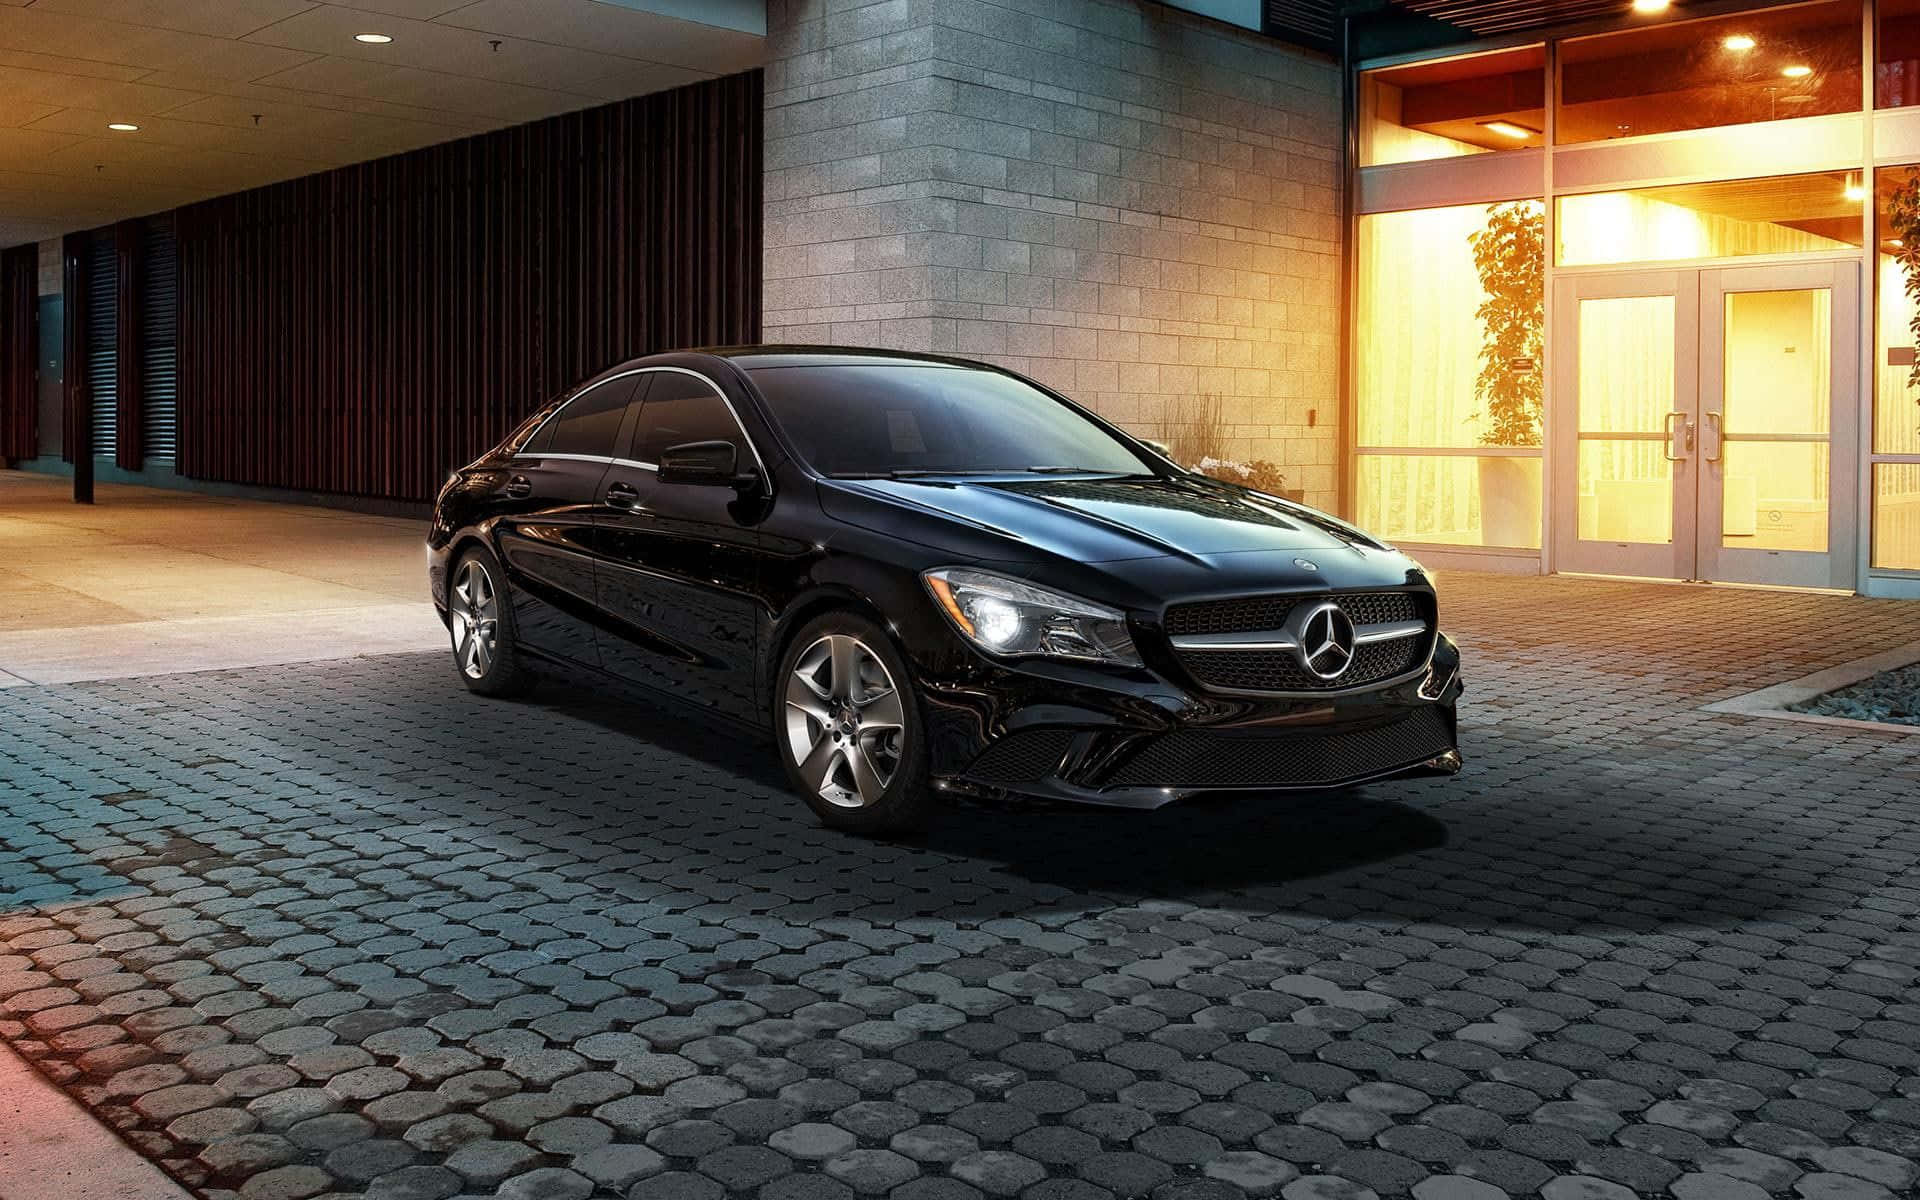 Sleek and Luxurious Mercedes Benz CLA-Class in Motion Wallpaper